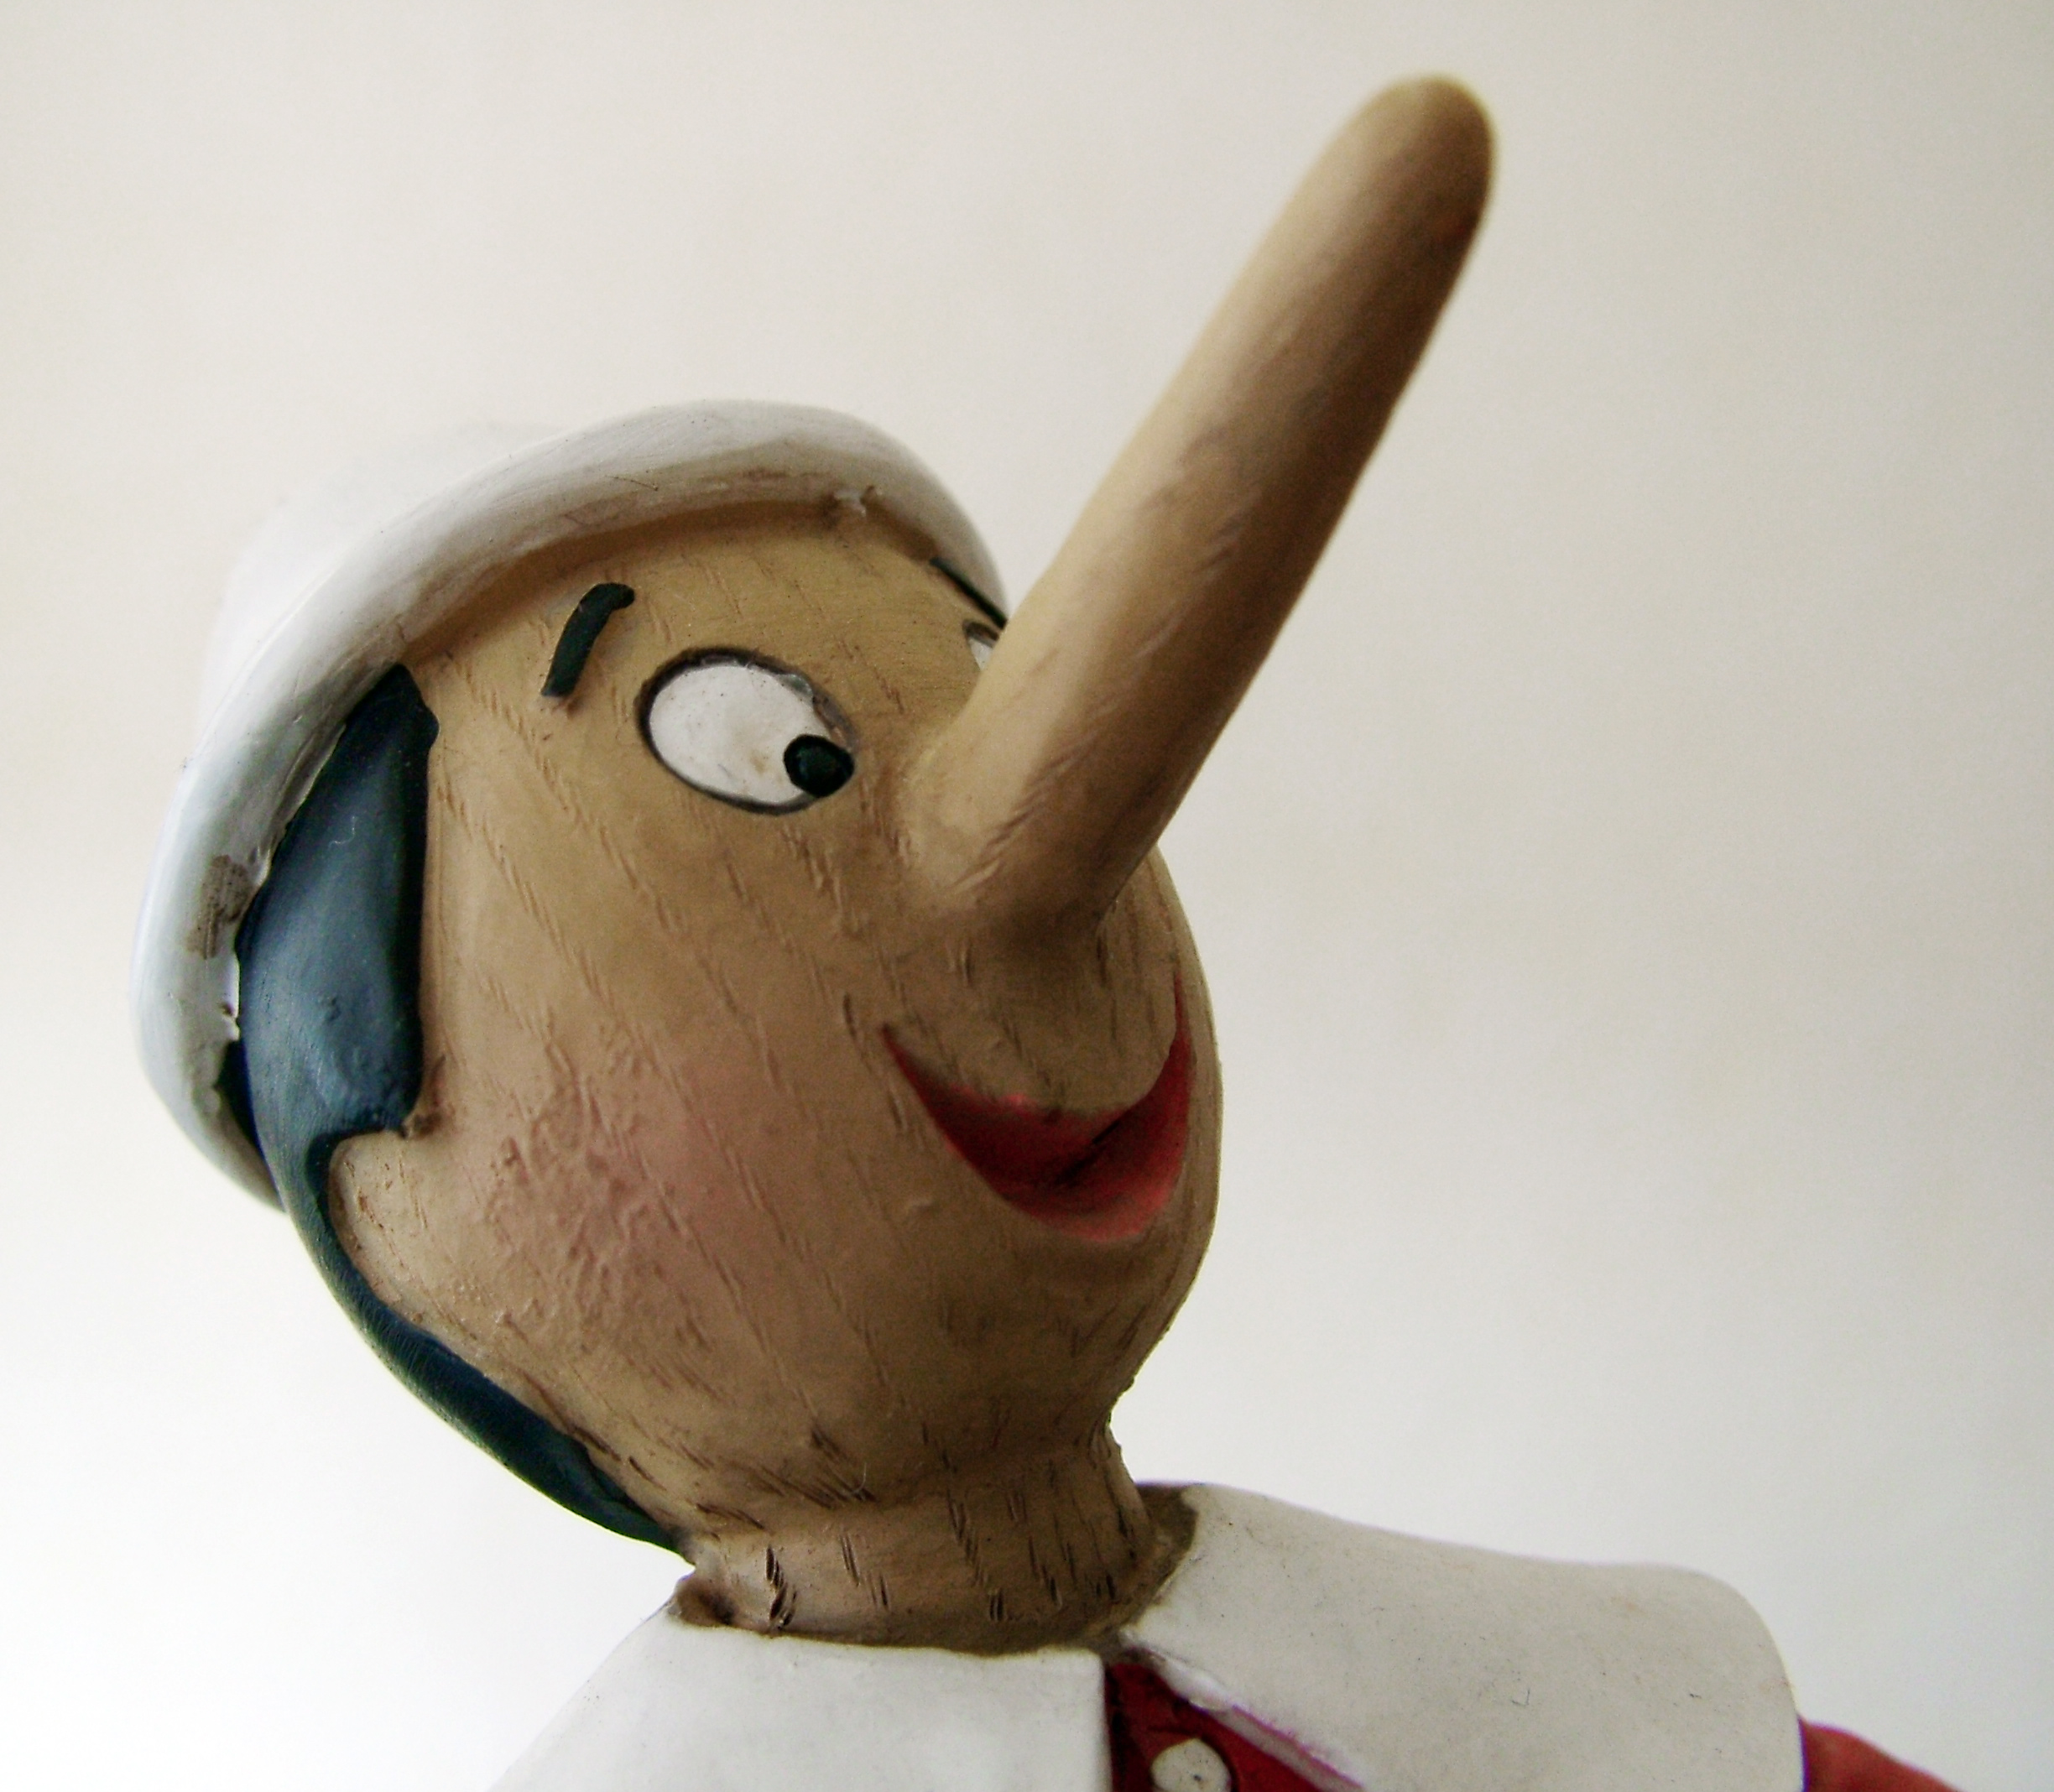 Le Avventure Di Pinocchio Per Difendere I Ragazzi Dal Cyberbullismo